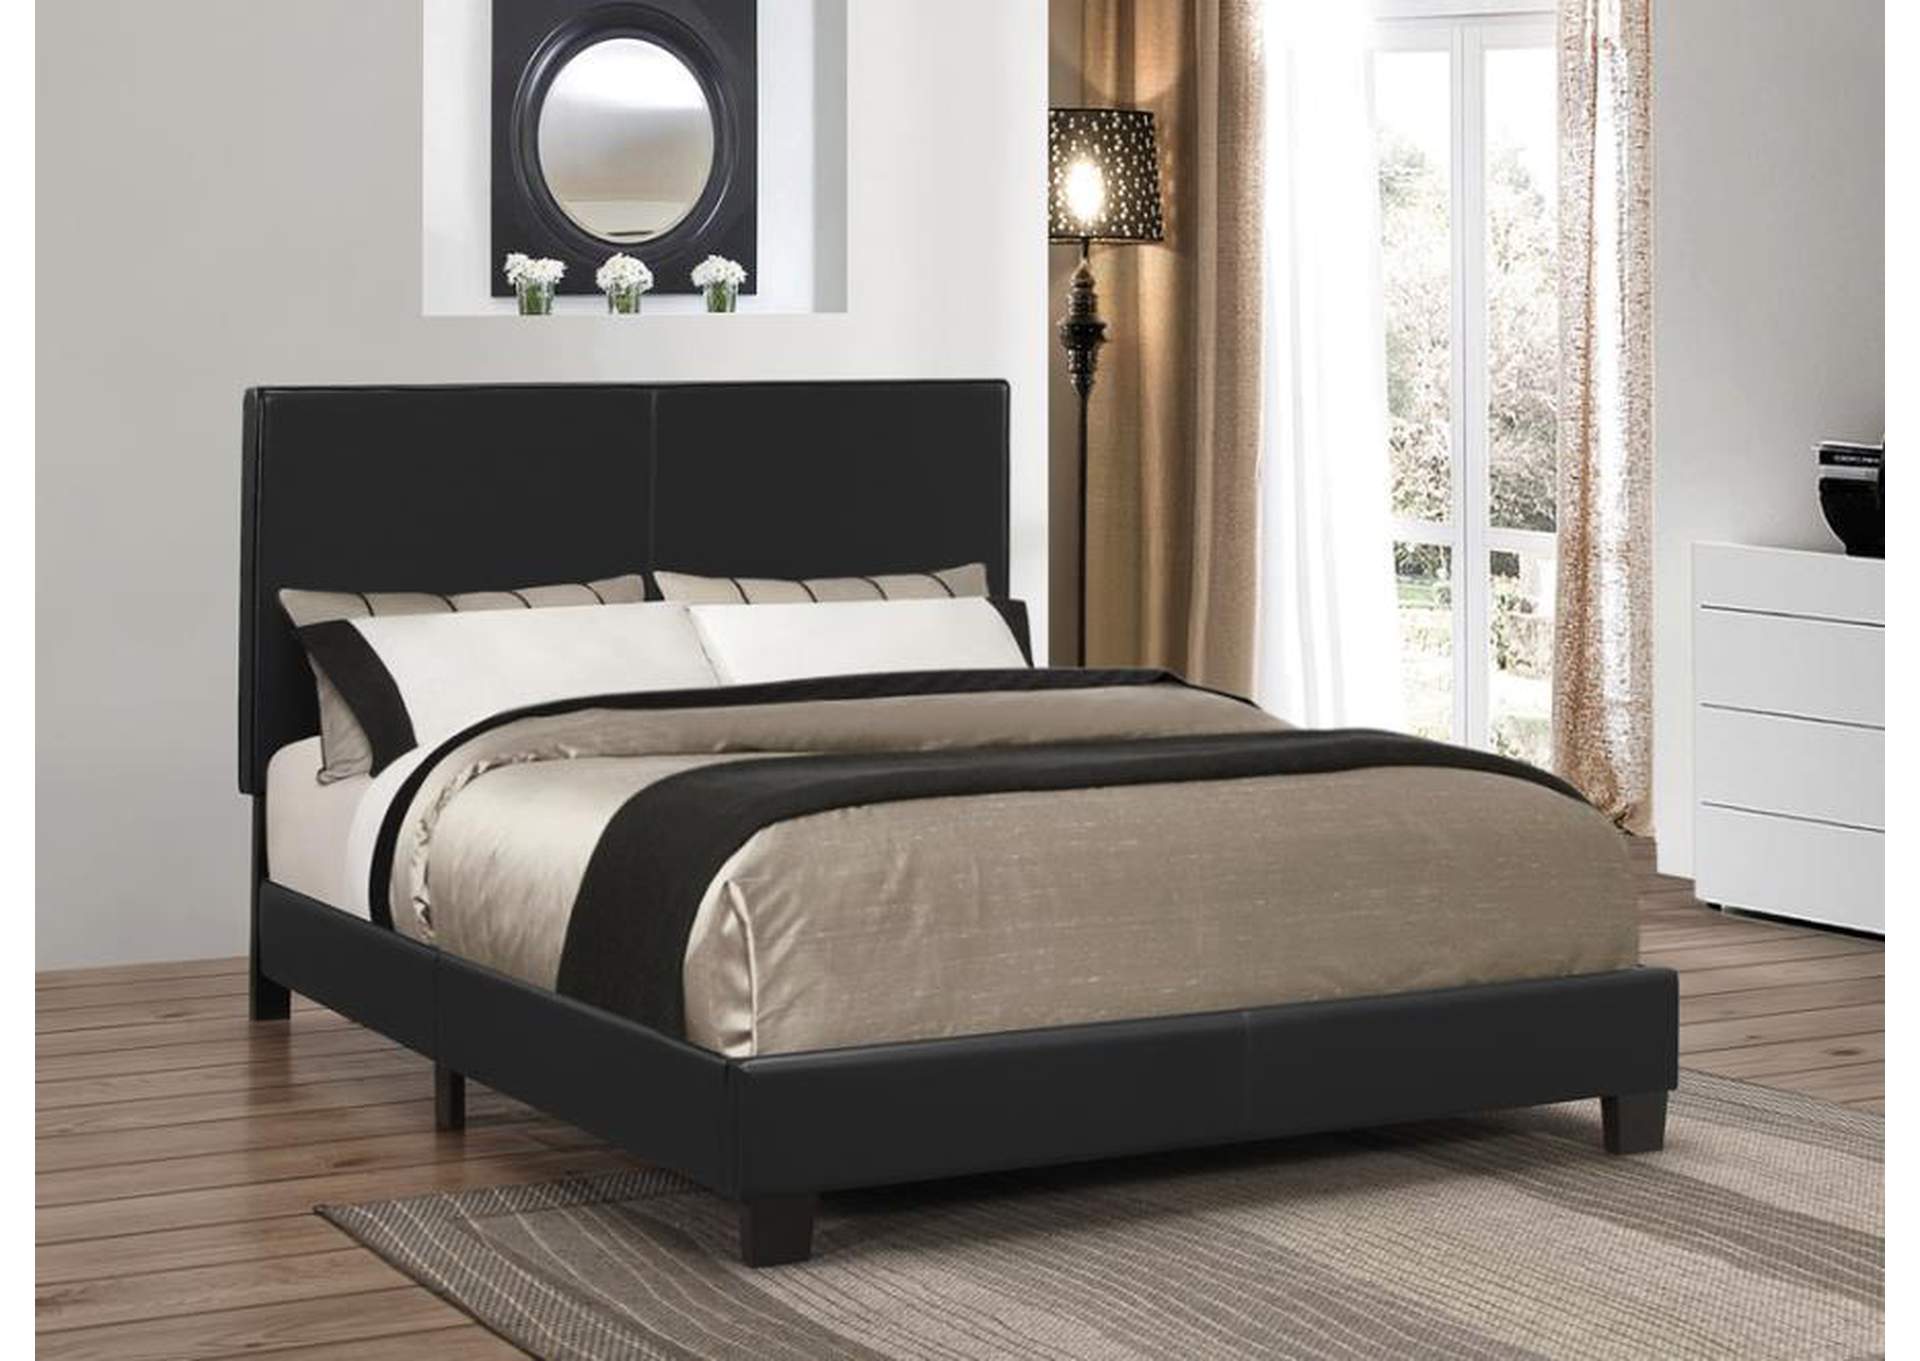 Muave Bed Upholstered Queen Black,Coaster Furniture